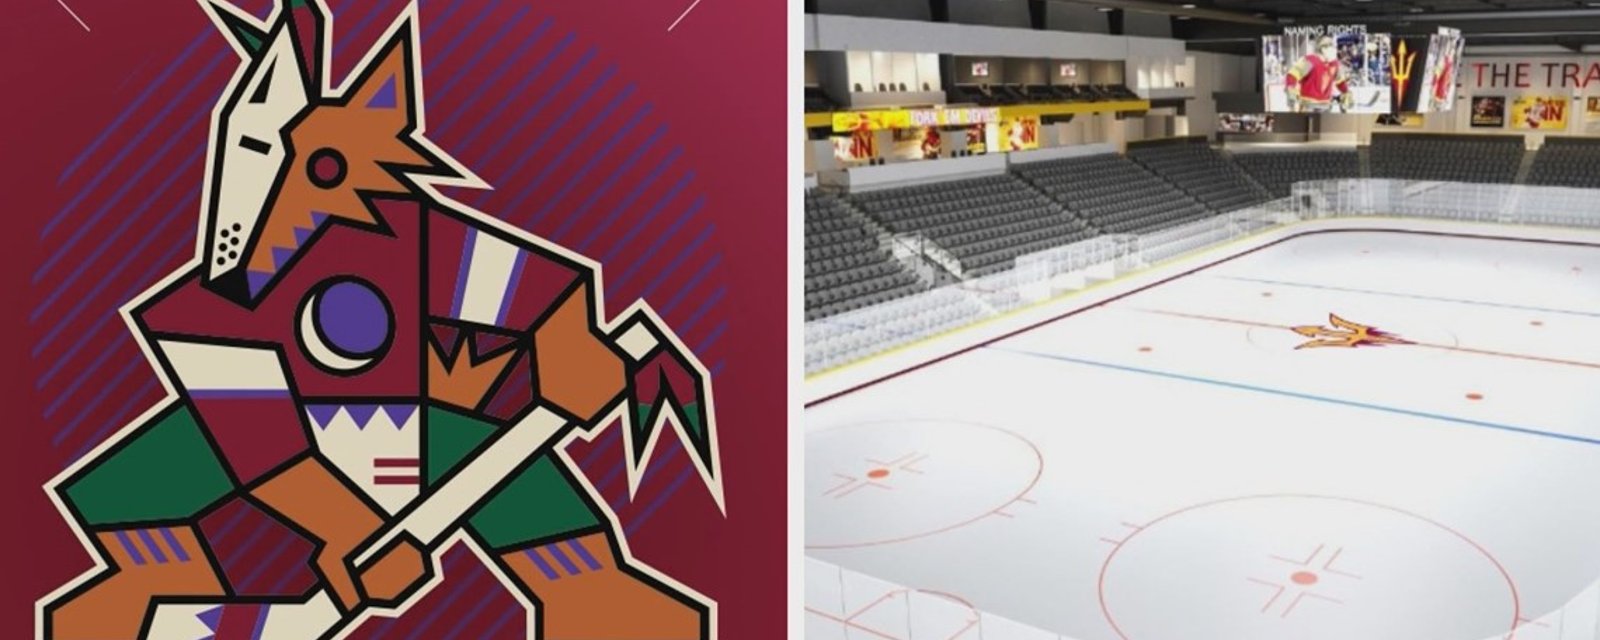 Les Coyotes auront deux logos au centre de leur patinoire l'an prochain